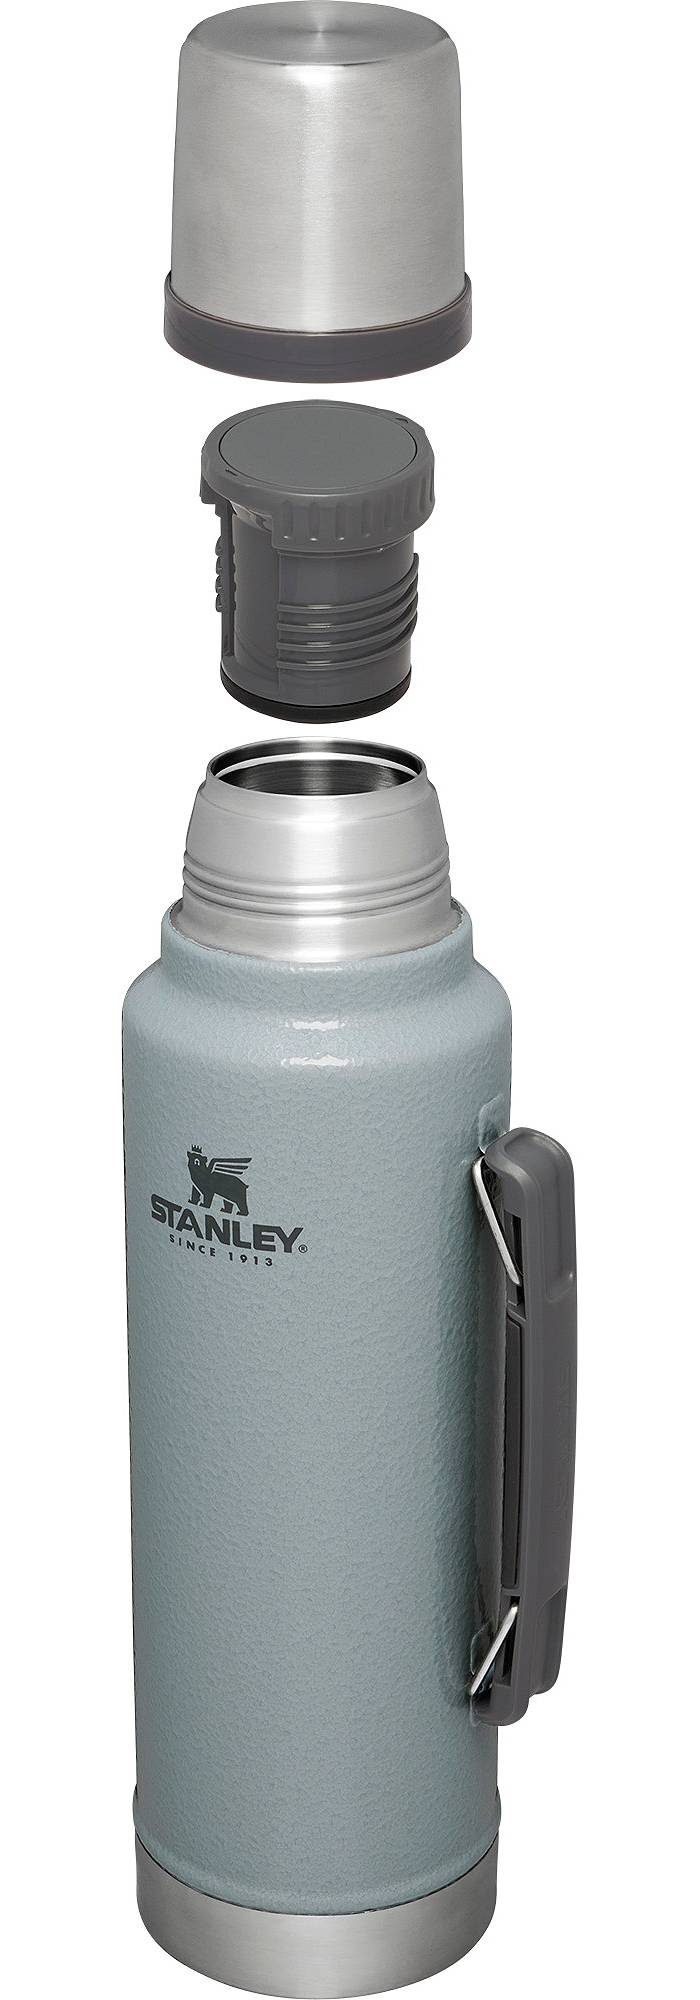 Stanley 100 Year Classic Vacuum Bottle - 1.1 qt.